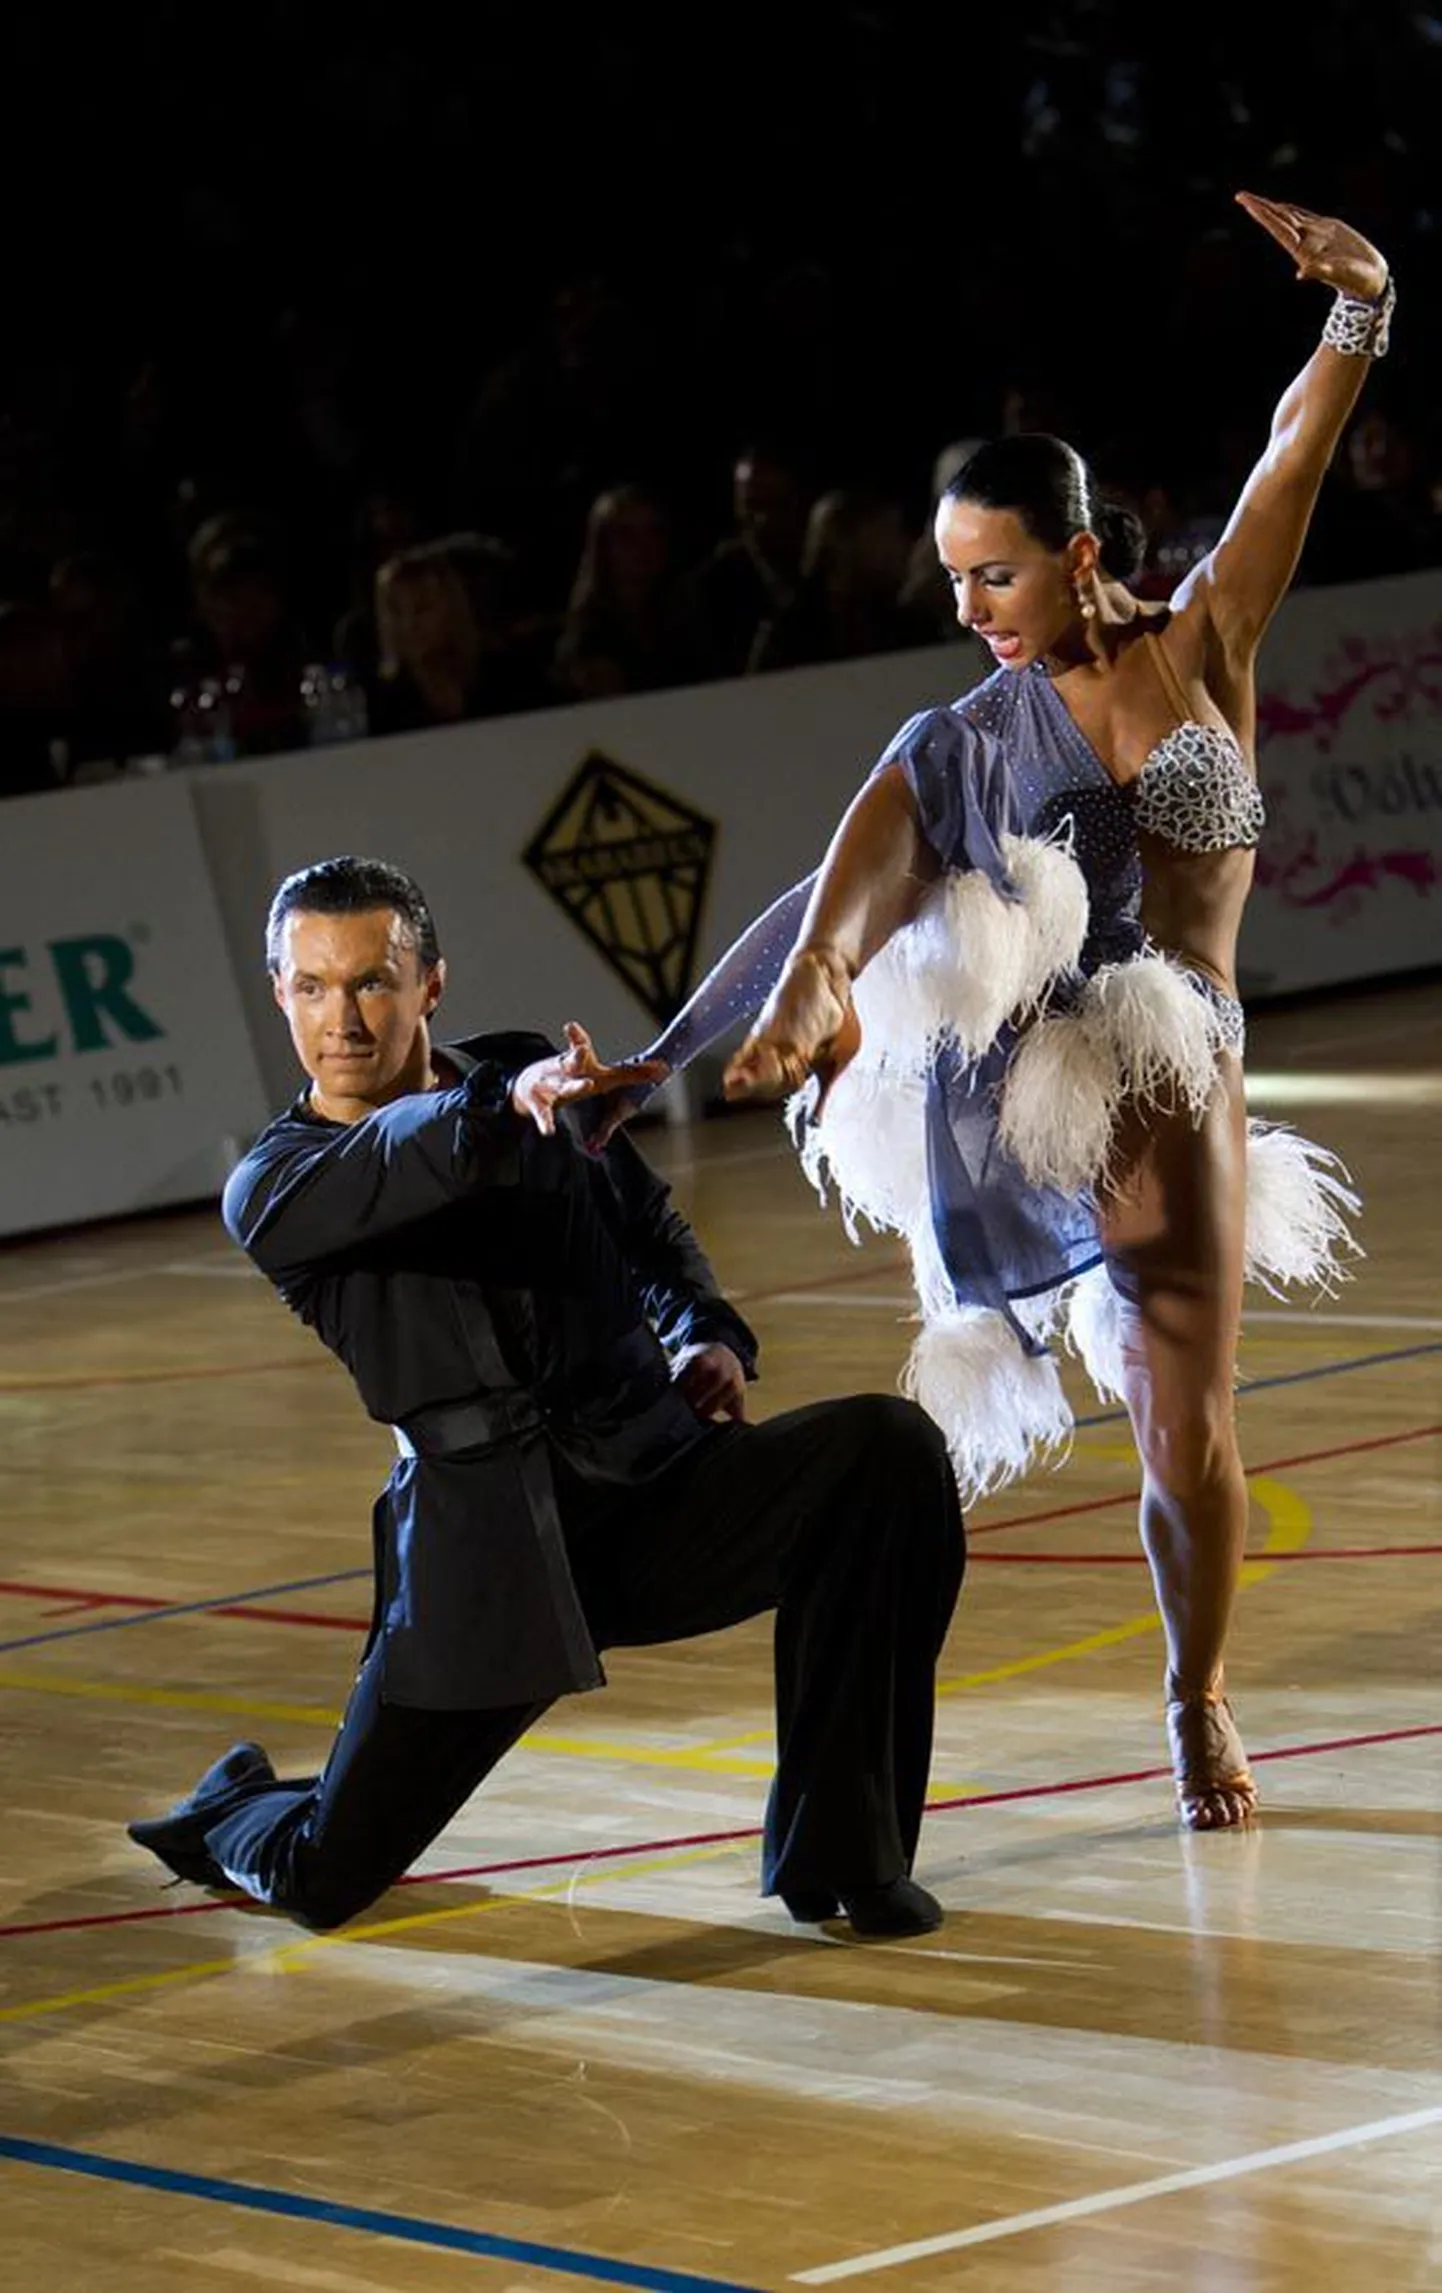 Viljandimaalt pärit Henry Puusepp ja tema partner Karin Lillemaa said Berliinis peetud maailma karikavõistluste etapil Ladina-Ameerika tantsudes kolmanda koha.